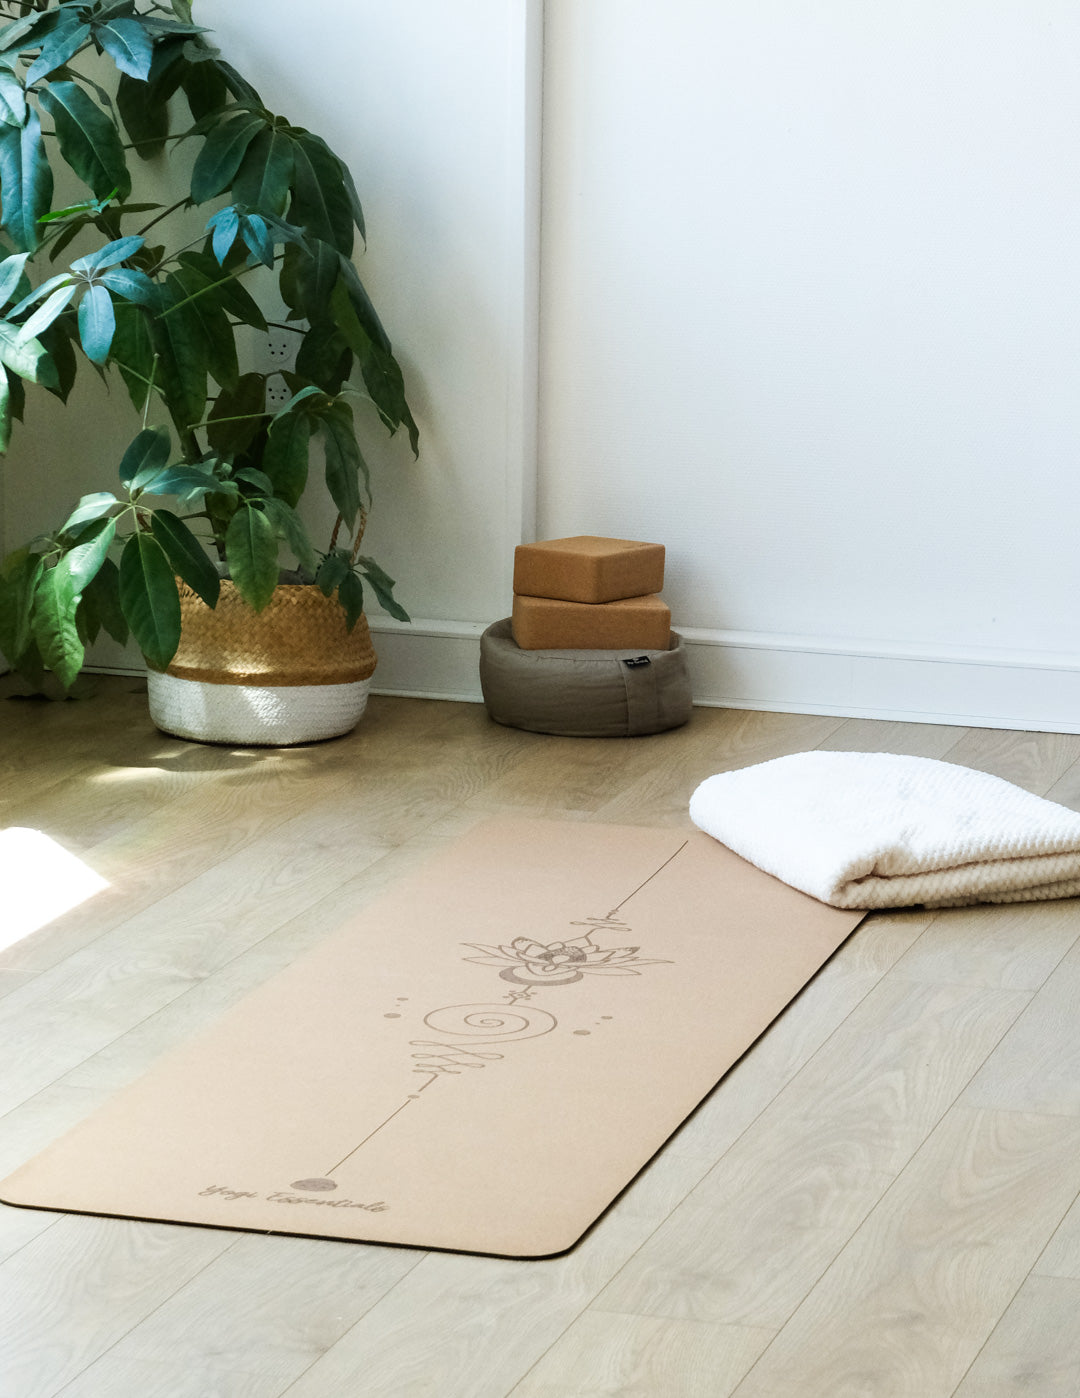 Yogi Essentials Yoga- en pilatesmatten Yoga mat kurk - Mandala - 6 mm dik